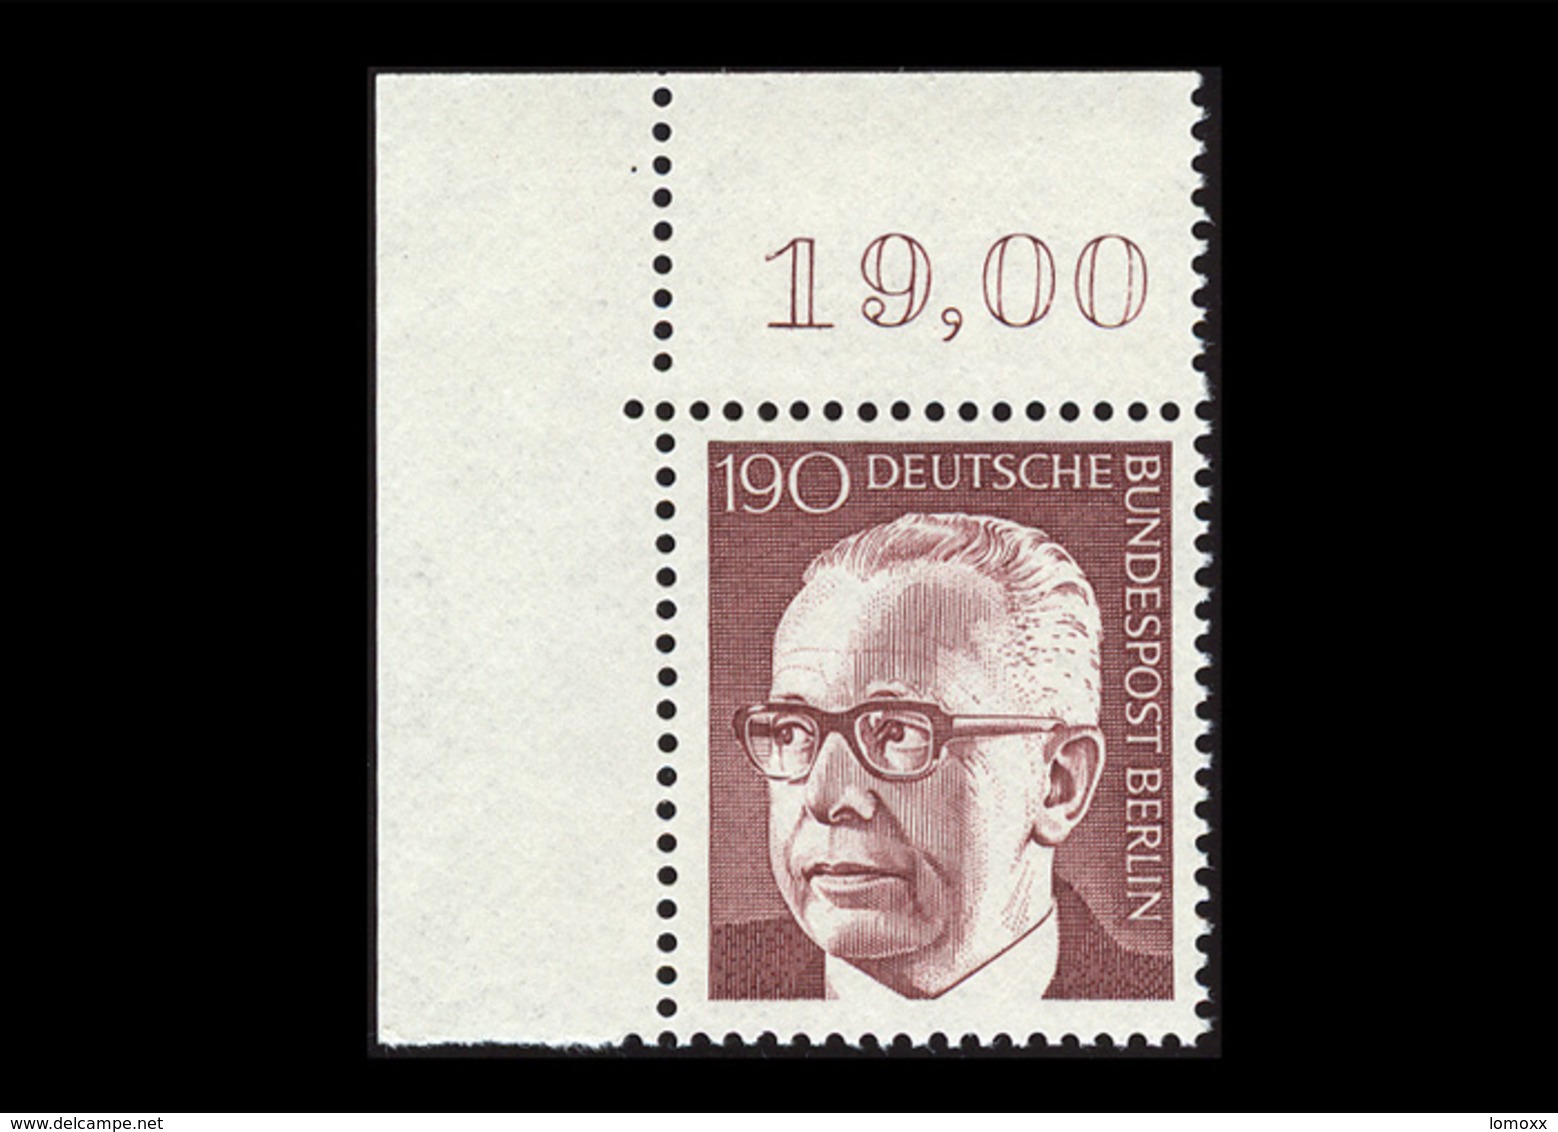 Berlin 1972, Michel-Nr. 433, Freimarken Bundespräsident Dr. Gustav Heinemann, 190 Pf., Eckrand Oben Links, Postfrisch - Unused Stamps